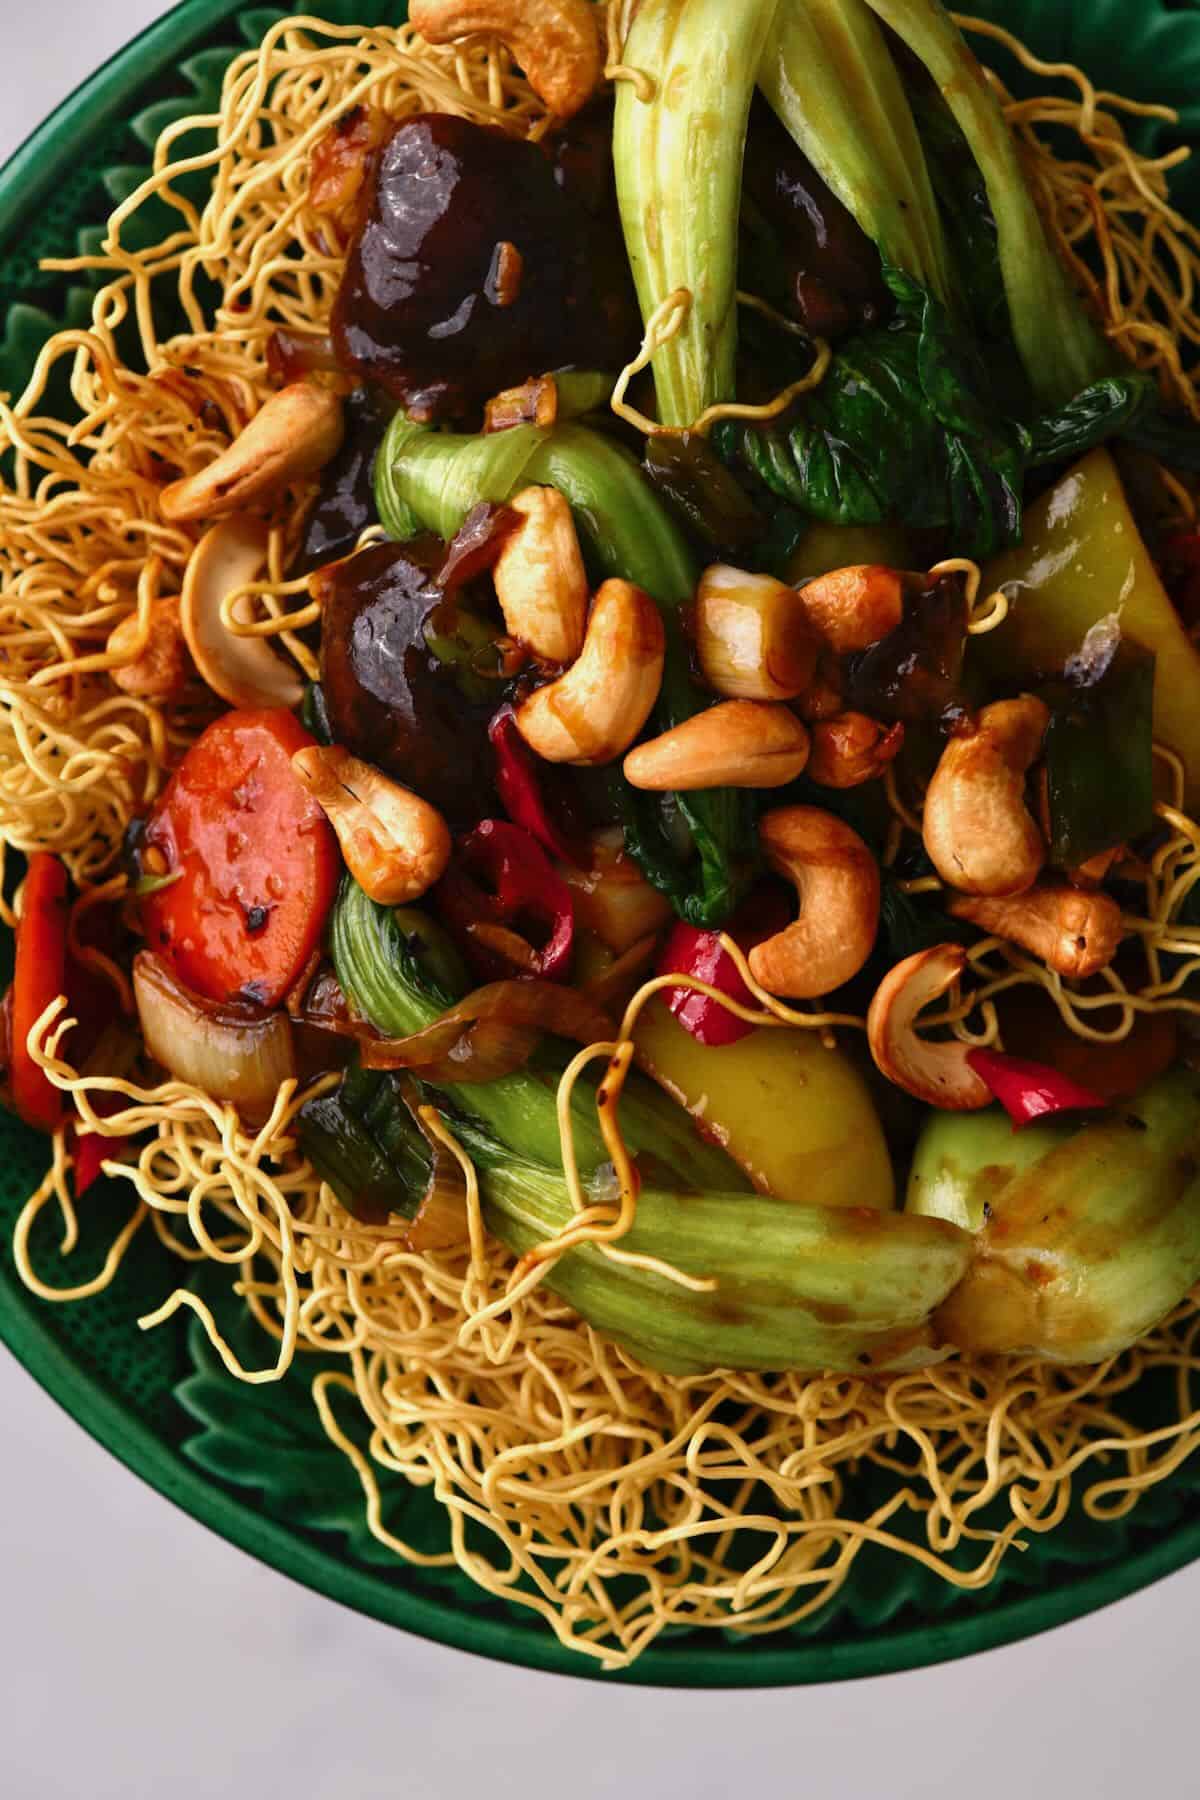 Stir fried vegetables and cashews over noodles